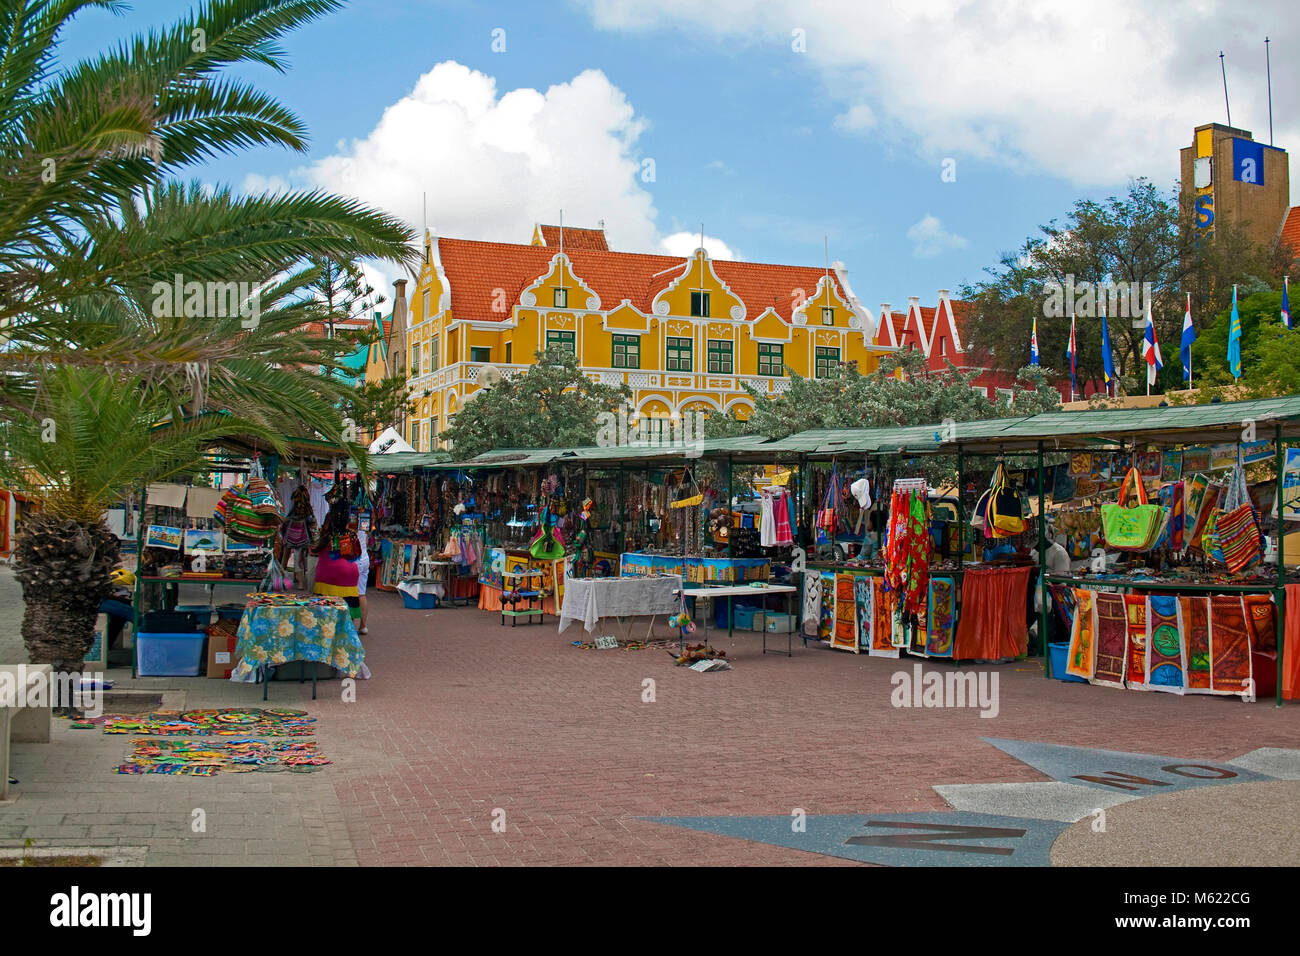 Puestos de venta de recuerdos en la costanera de distrito de Punda, detrás del edificio Punha y comercio arcade, Willemstad, Curazao, Antillas Holandesas, el Caribe Foto de stock